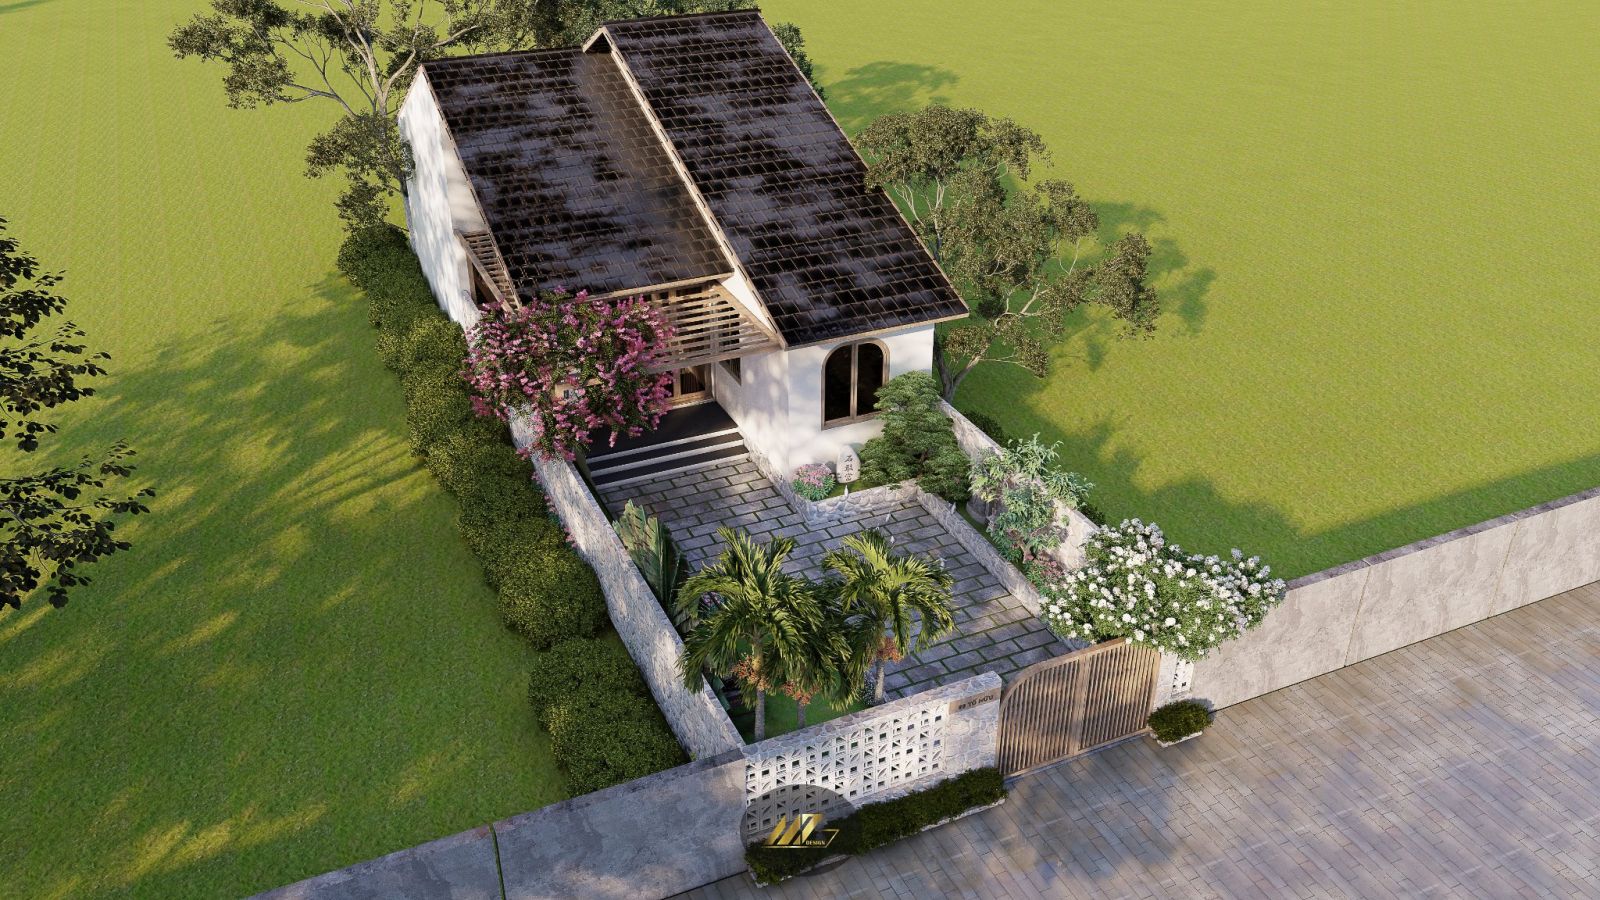 Ngôi nhà nhỏ với diện tích 88m2 ở vùng ngoại thành Sài Gòn, thiết kế theo phong cách Wabi-sabi, chú trọng sự bình yên, thoải mái, thư giãn.